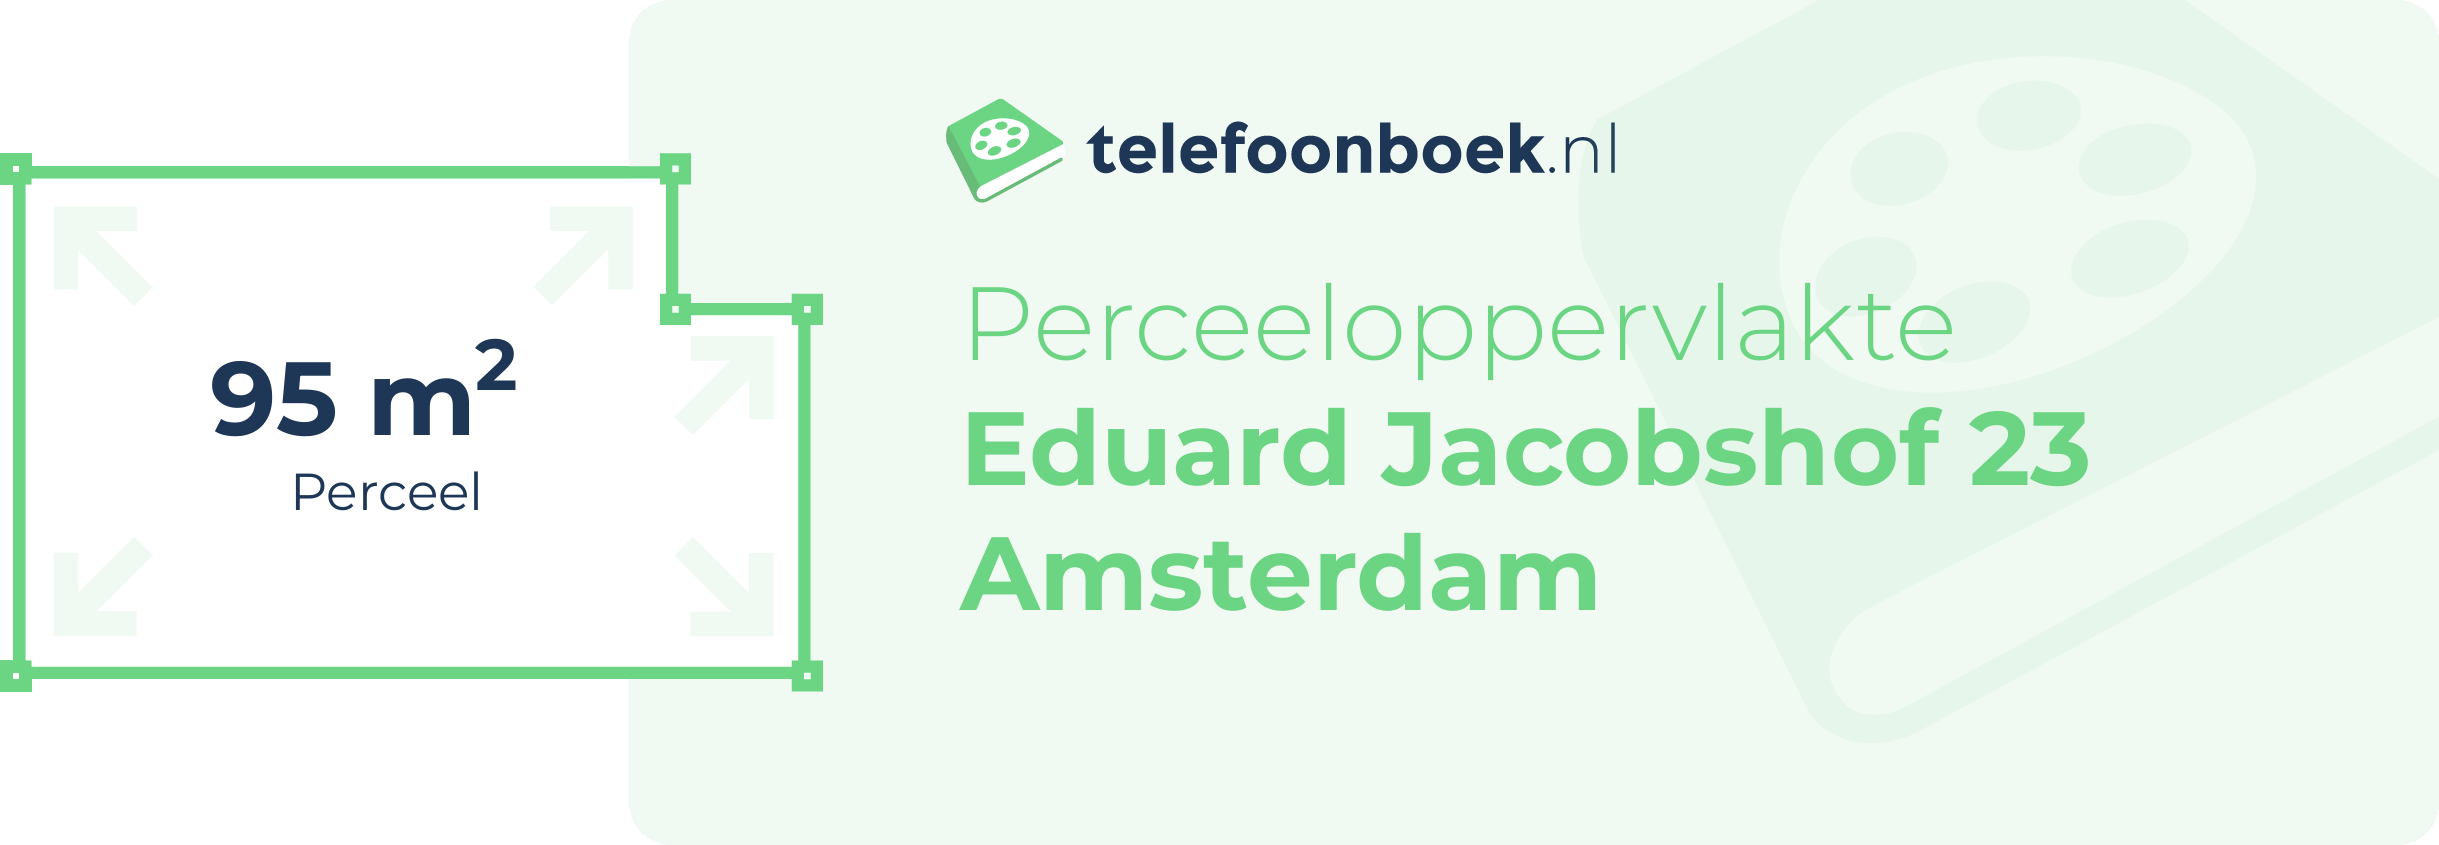 Perceeloppervlakte Eduard Jacobshof 23 Amsterdam